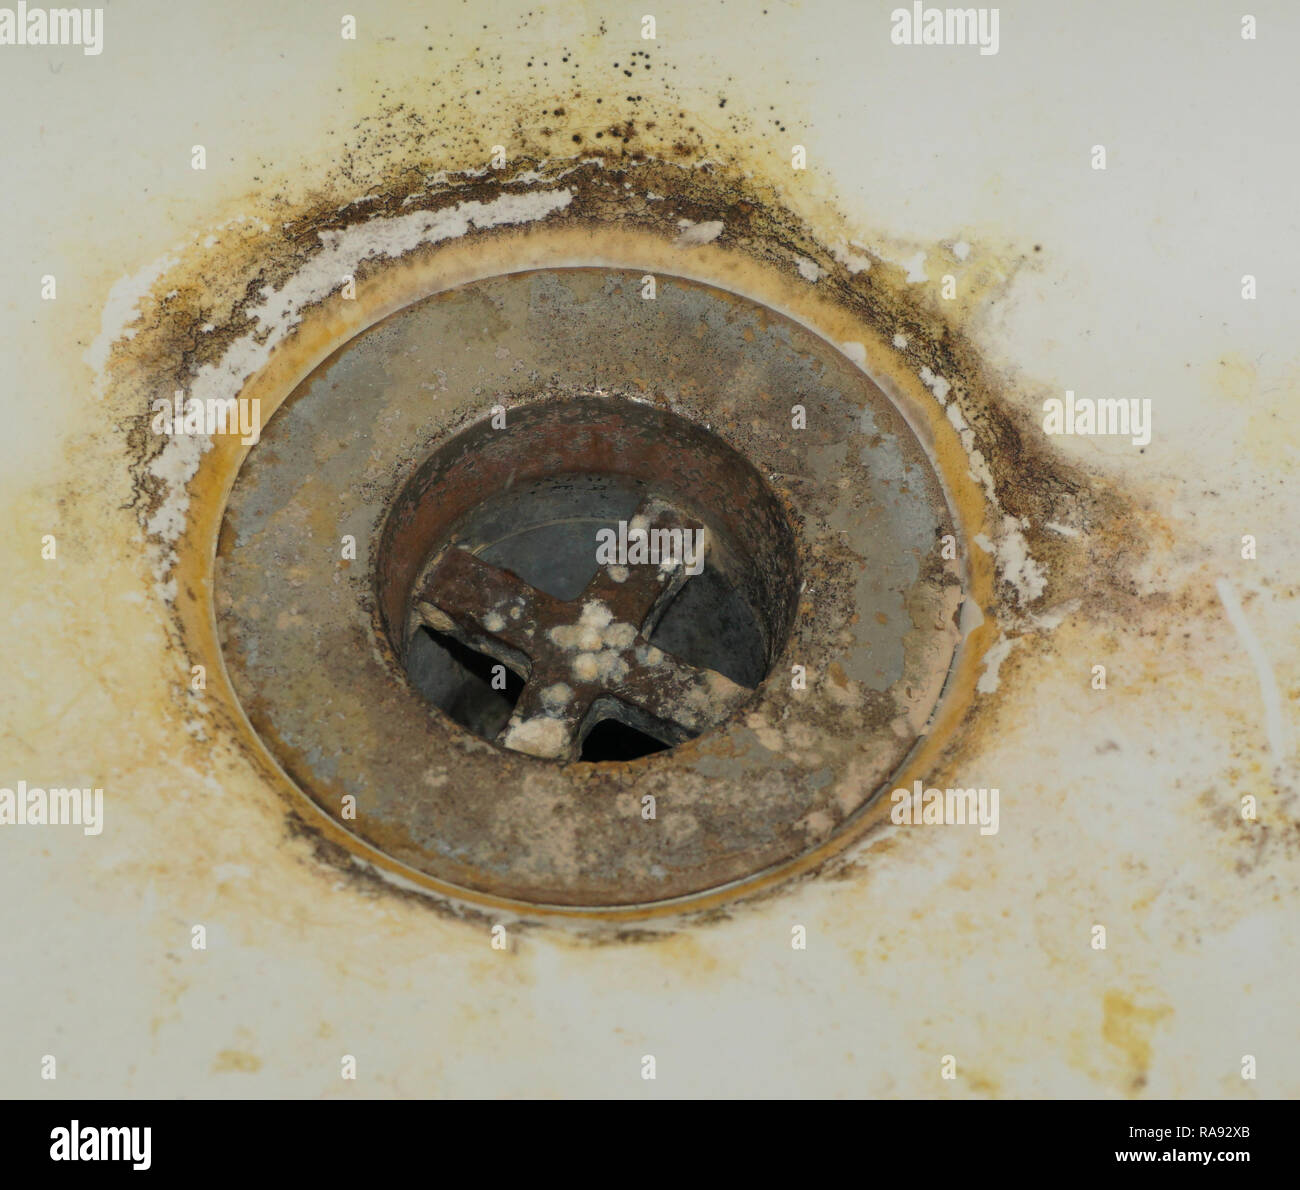 disgusting bathroom sink Stock Photo